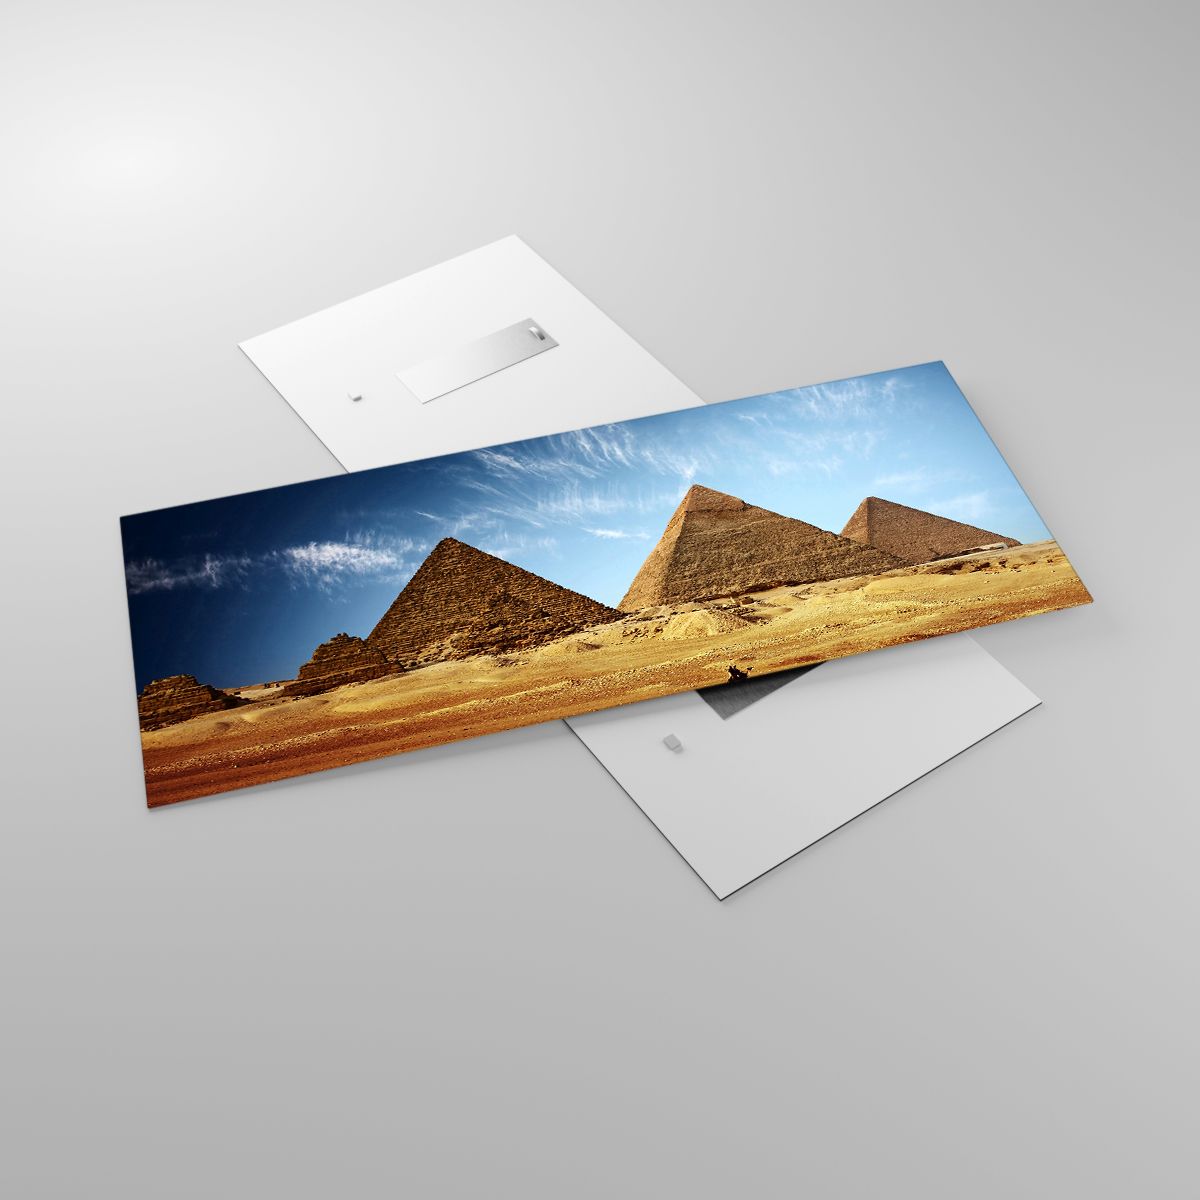 Quadri Piramidi, Quadri Architettura, Quadri Paesaggio, Quadri Egitto, Quadri Deserto